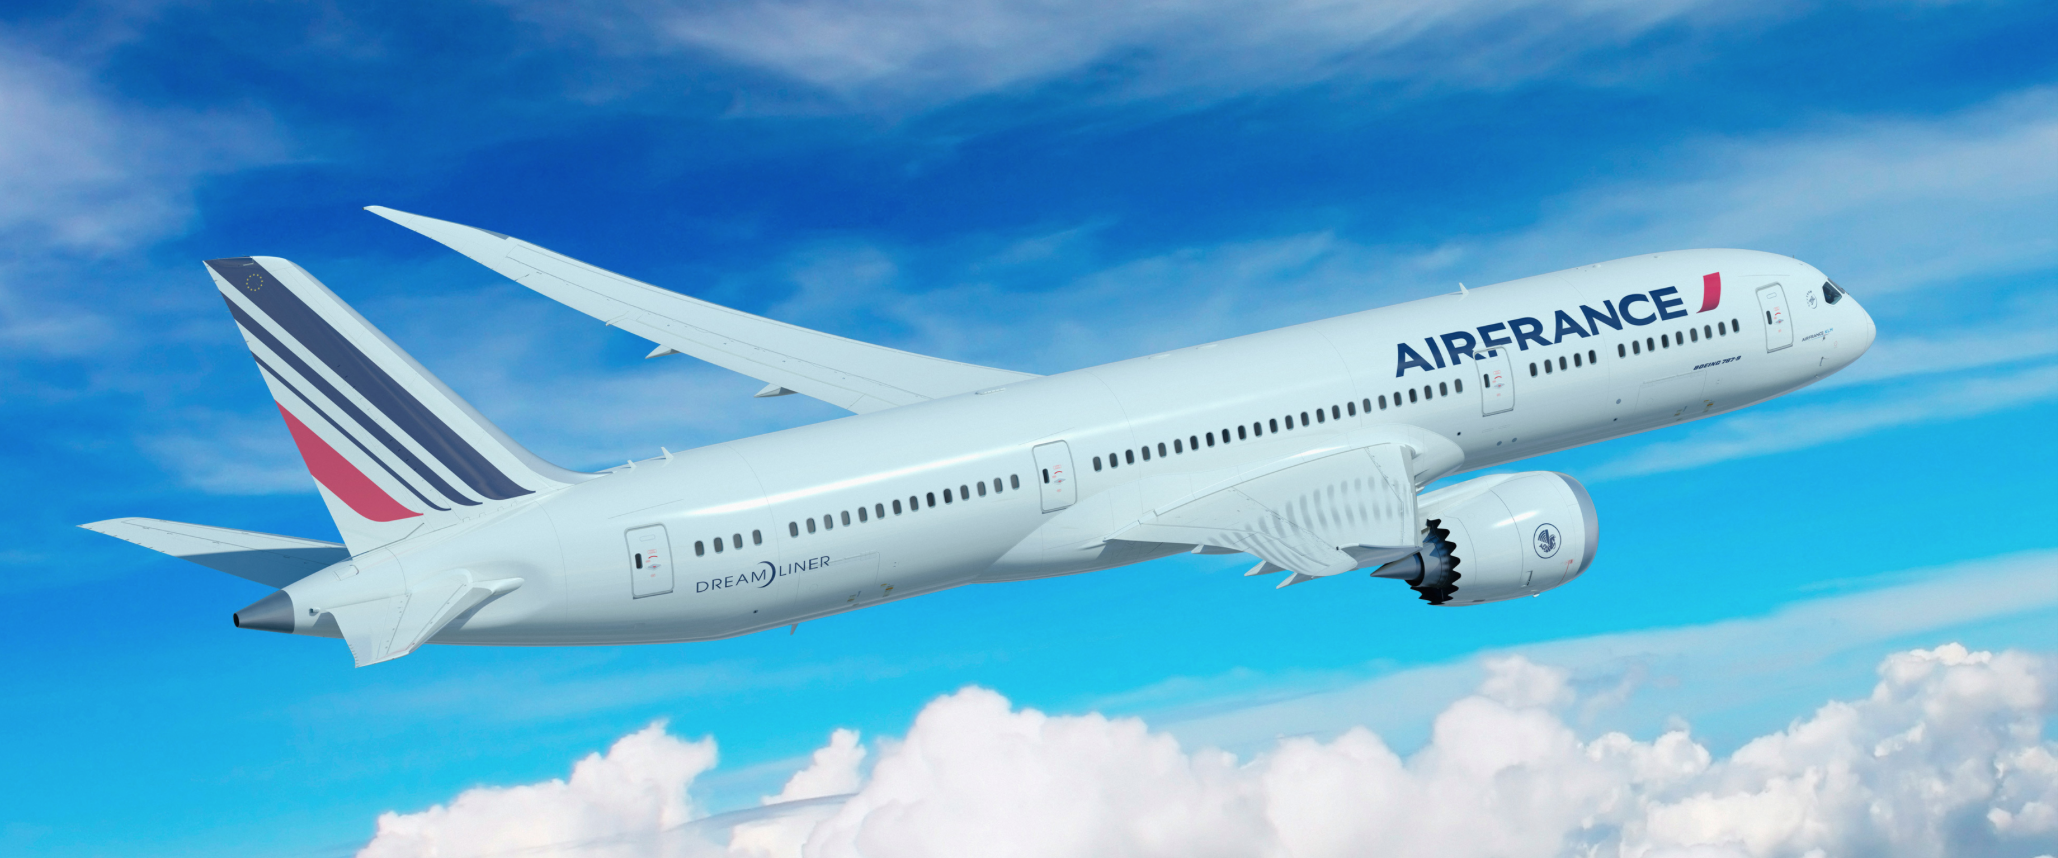 Exclusivité : l'aménagement du Boeing 787-9 Air France ! - The Travelers  Club